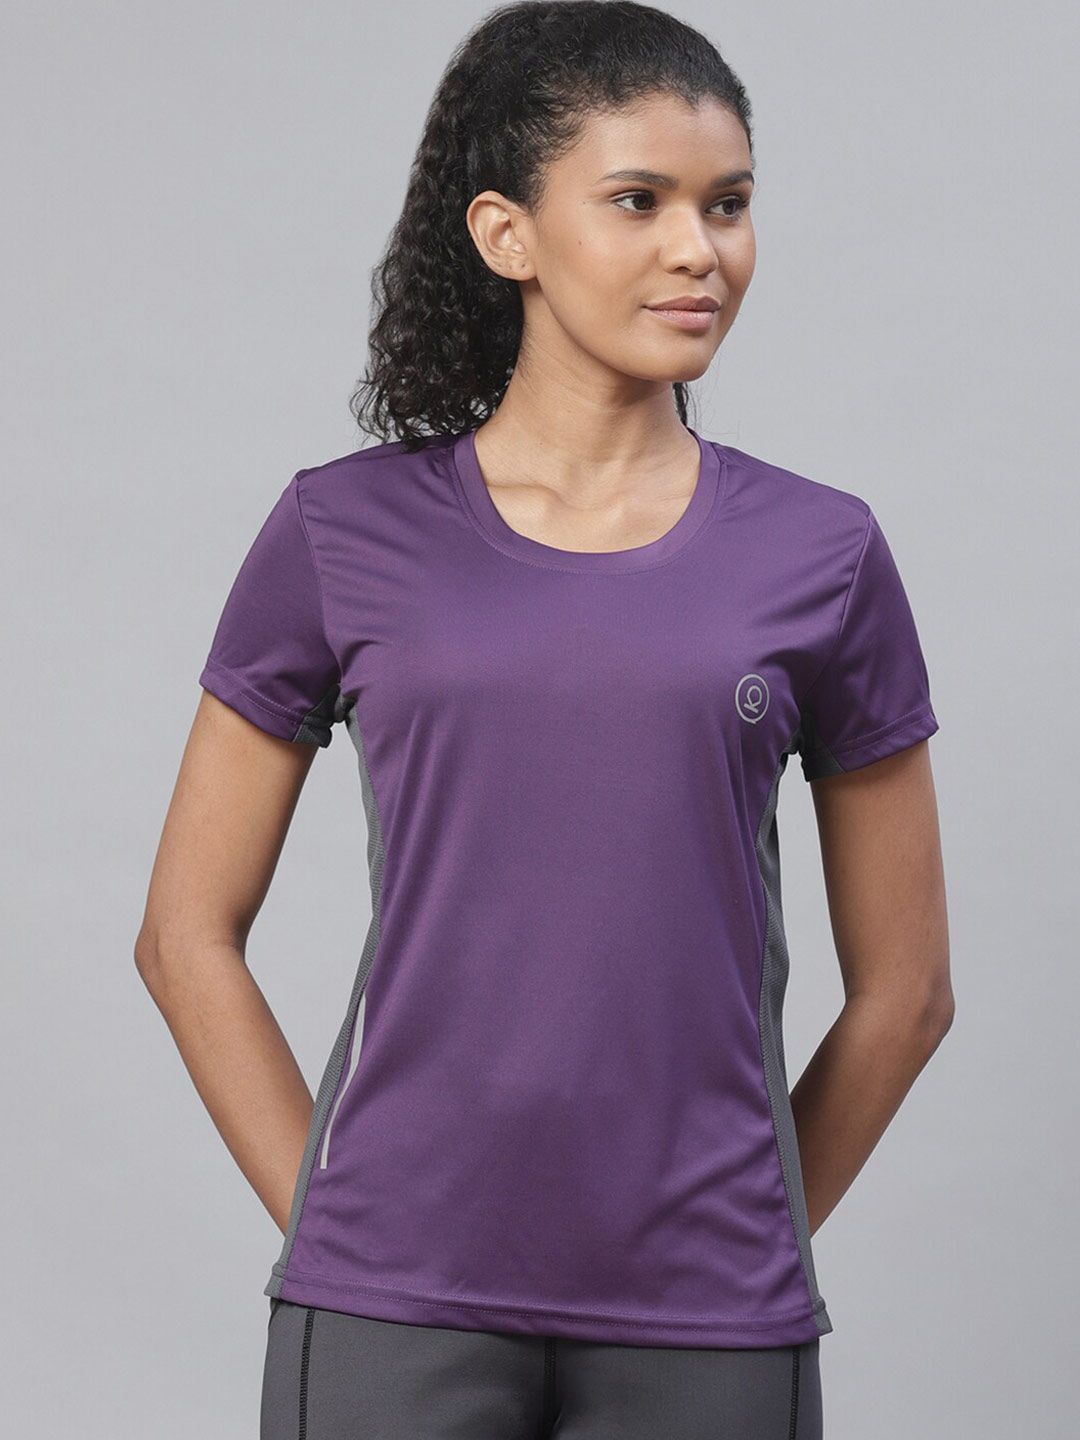 Chkokko Women Purple T-shirt Price in India